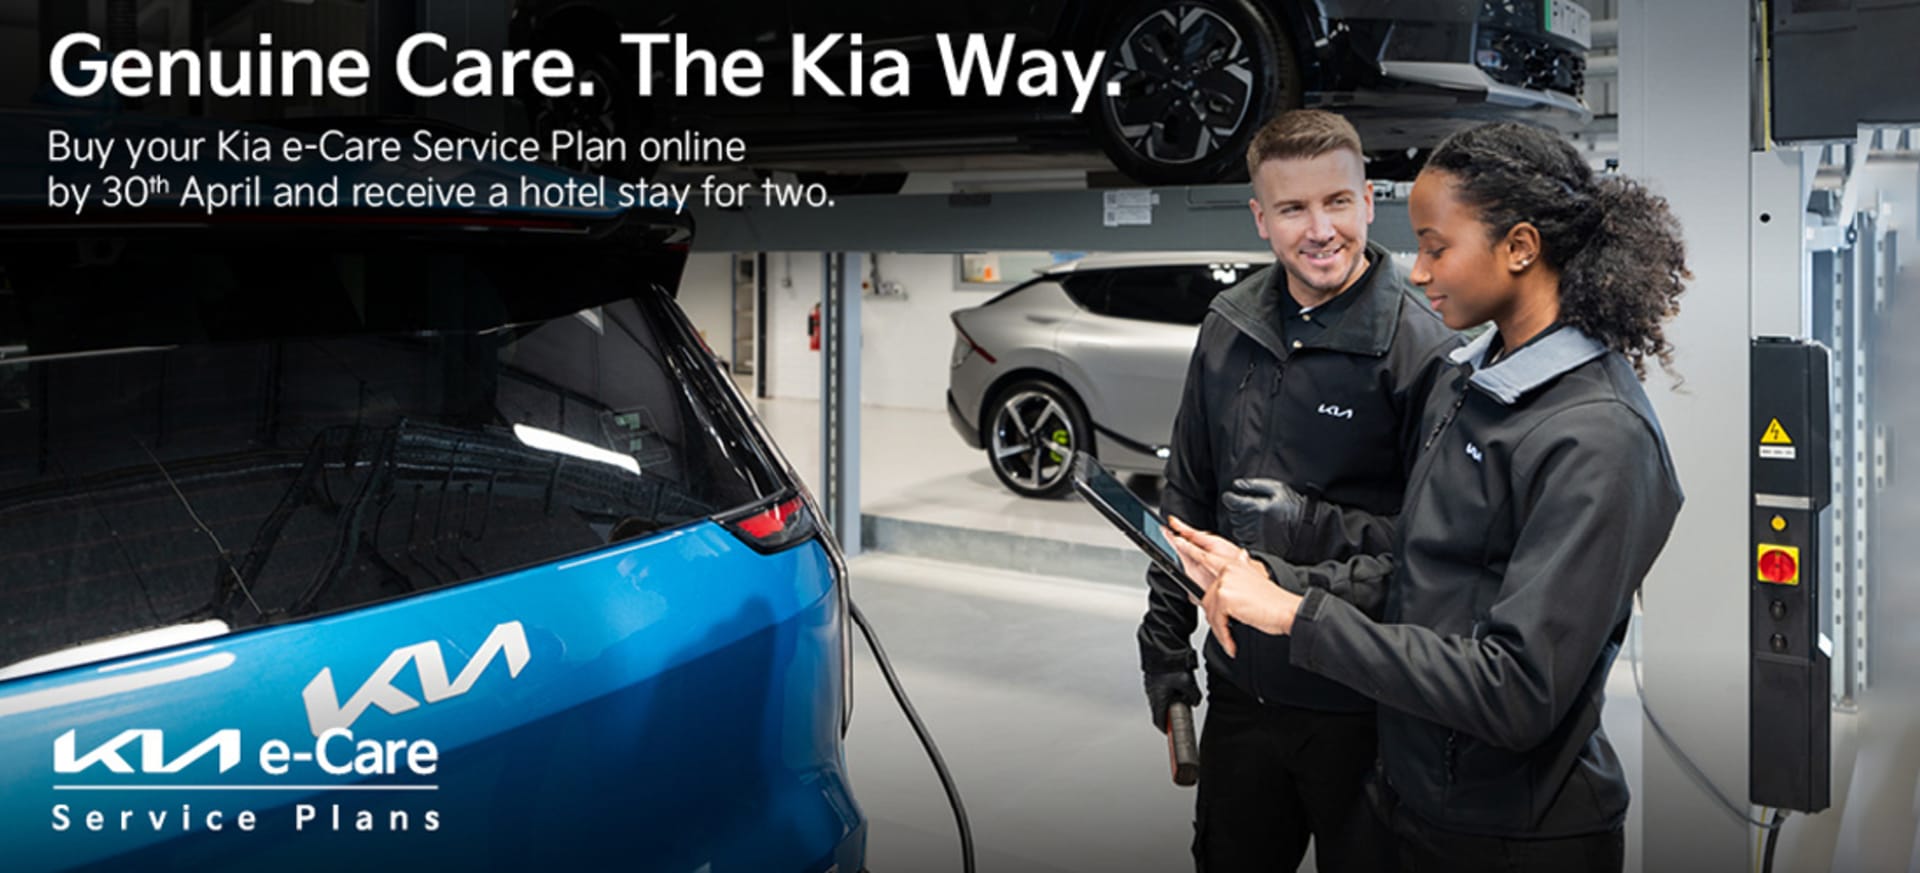 Kia e-care Service Plans